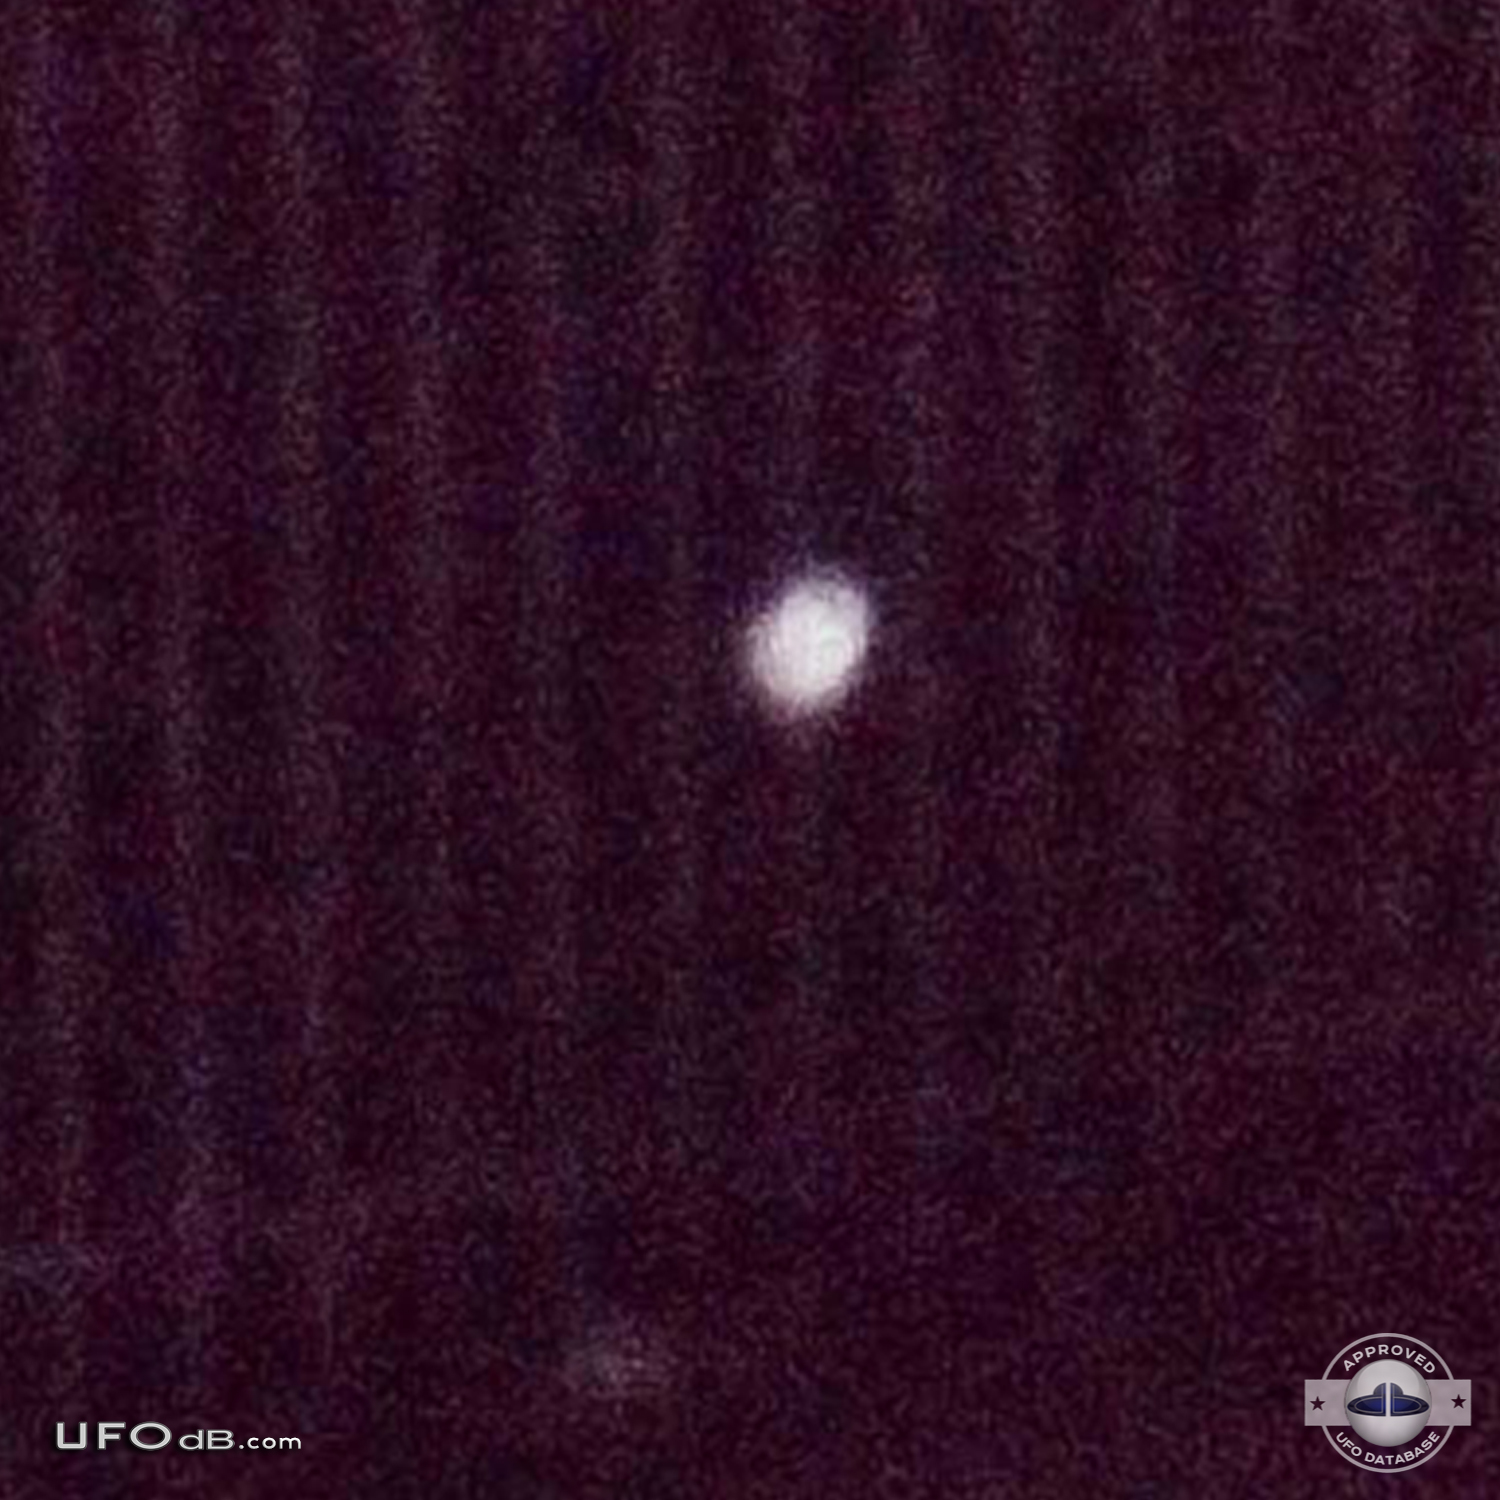 Picture of a Small white probe UFO caught in the backyard Bogota 2012 UFO Picture #400-3